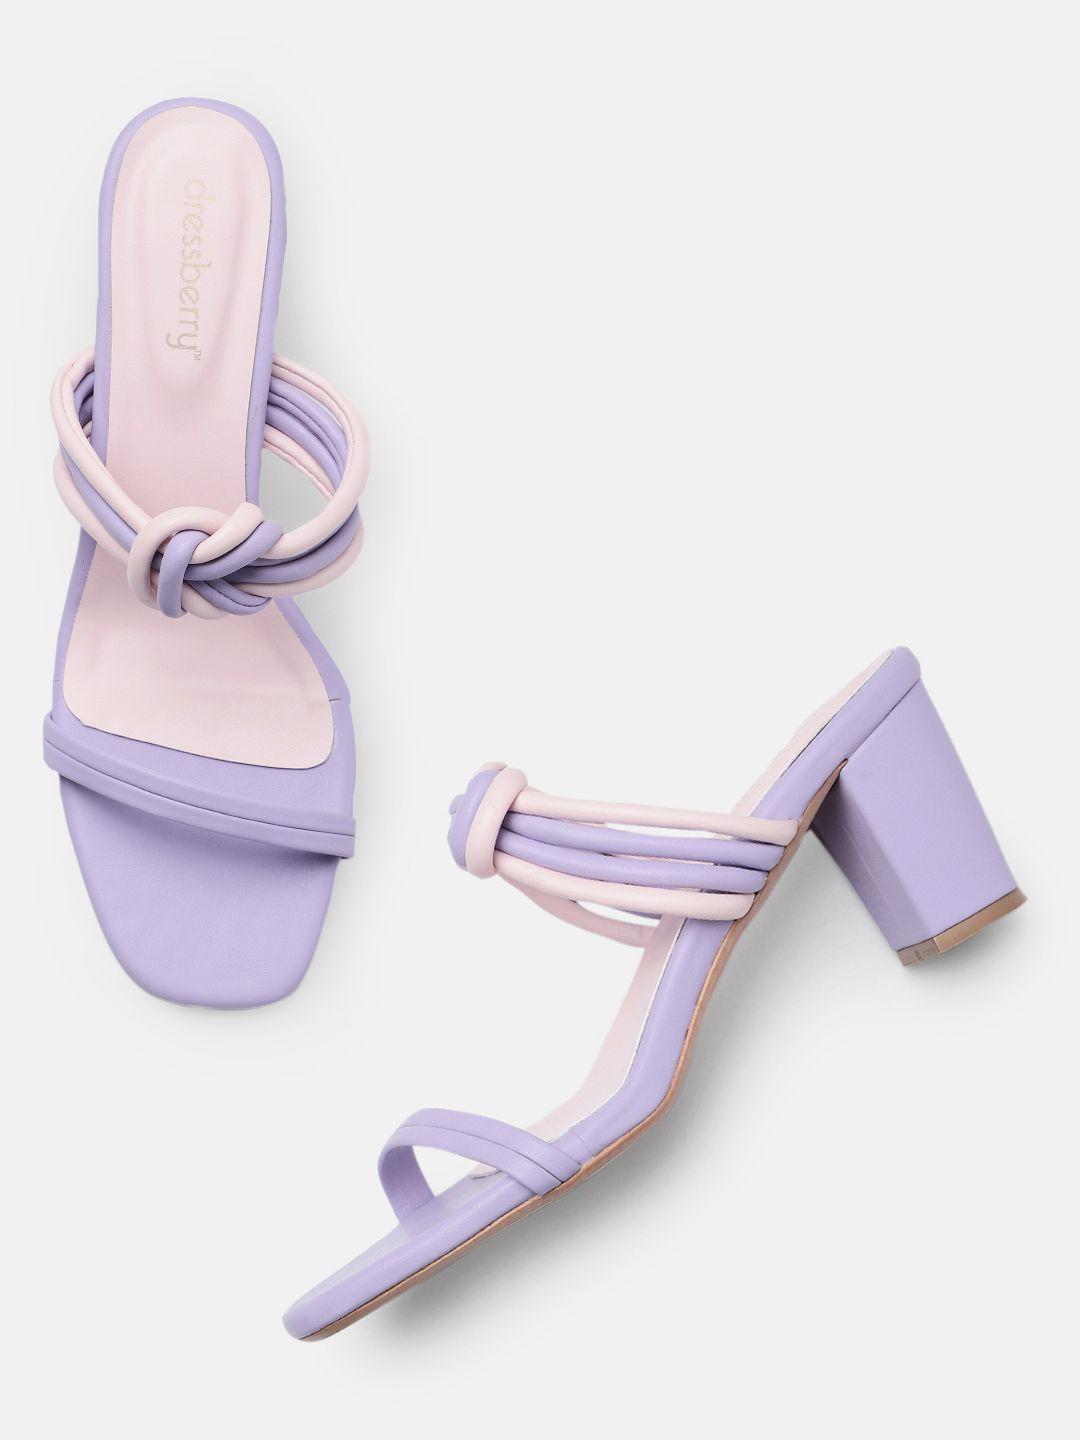 dressberry-block-heels